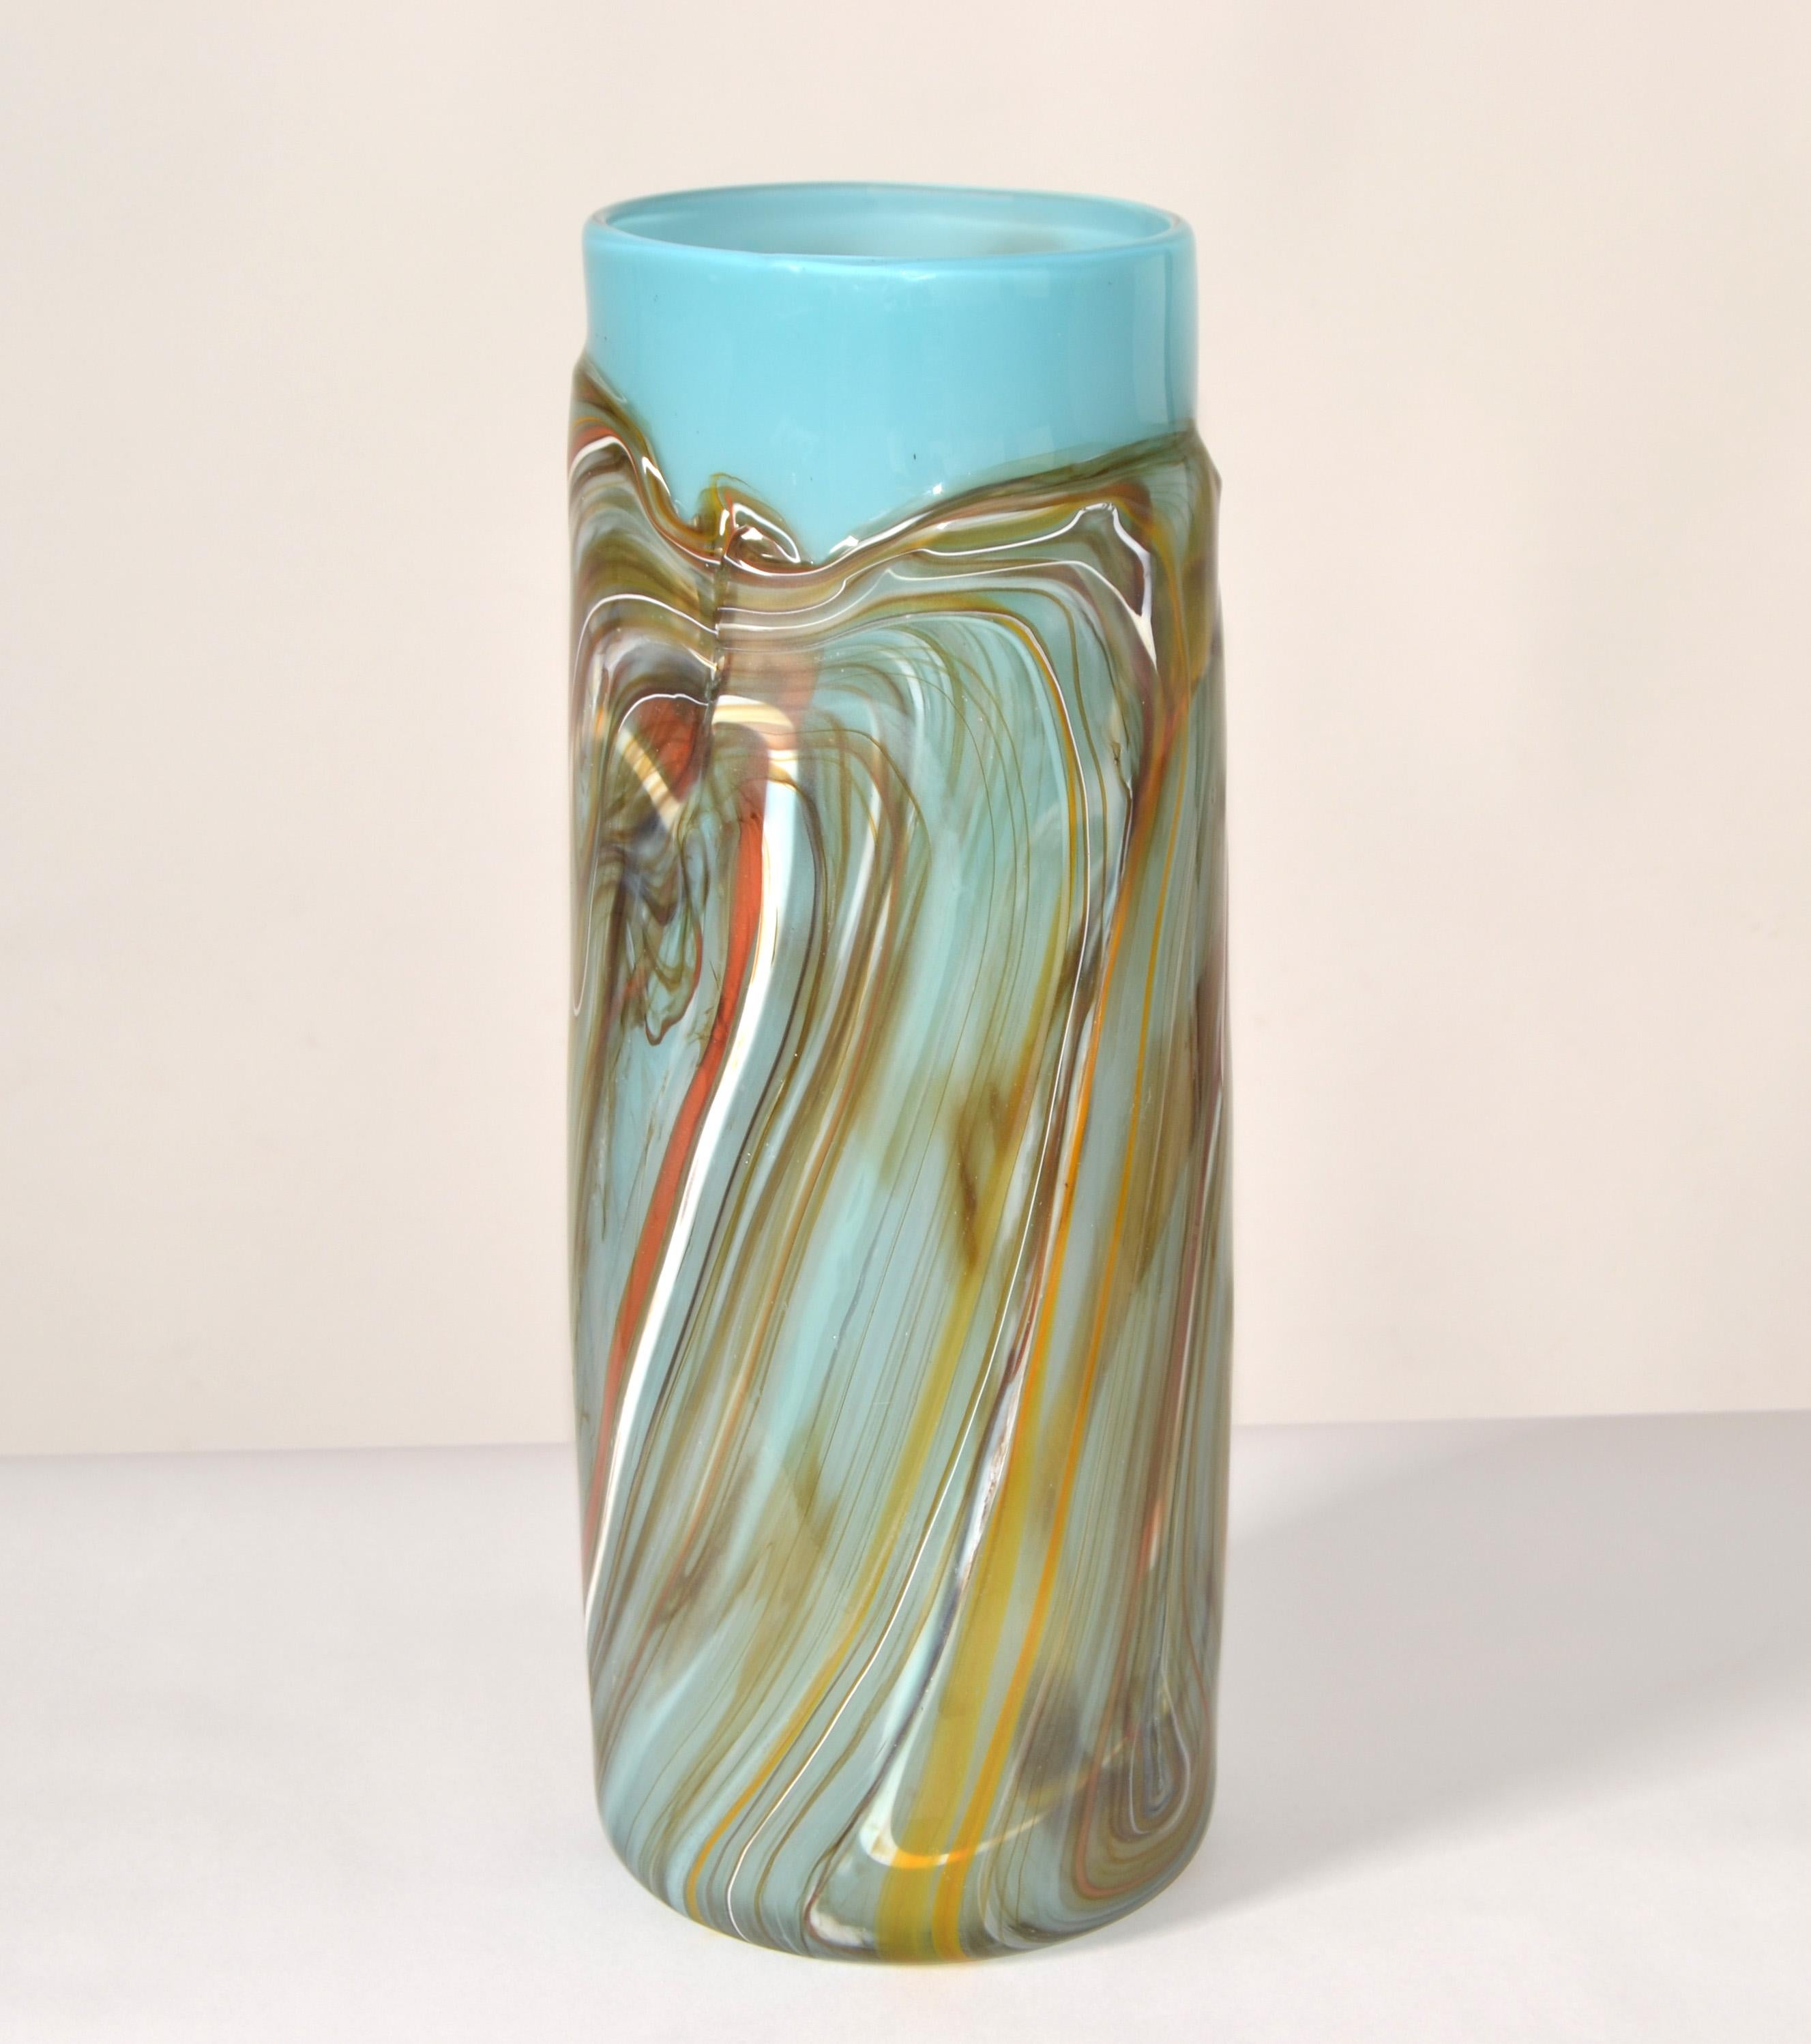 Vase de studio en verre d'art soufflé, encastré dans du verre turquoise avec des tourbillons de verre taupe, brun, blanc et orange.
Période moderne du milieu du siècle dans un style minimaliste pour une plus grande composition de fleurs. 
Pas de